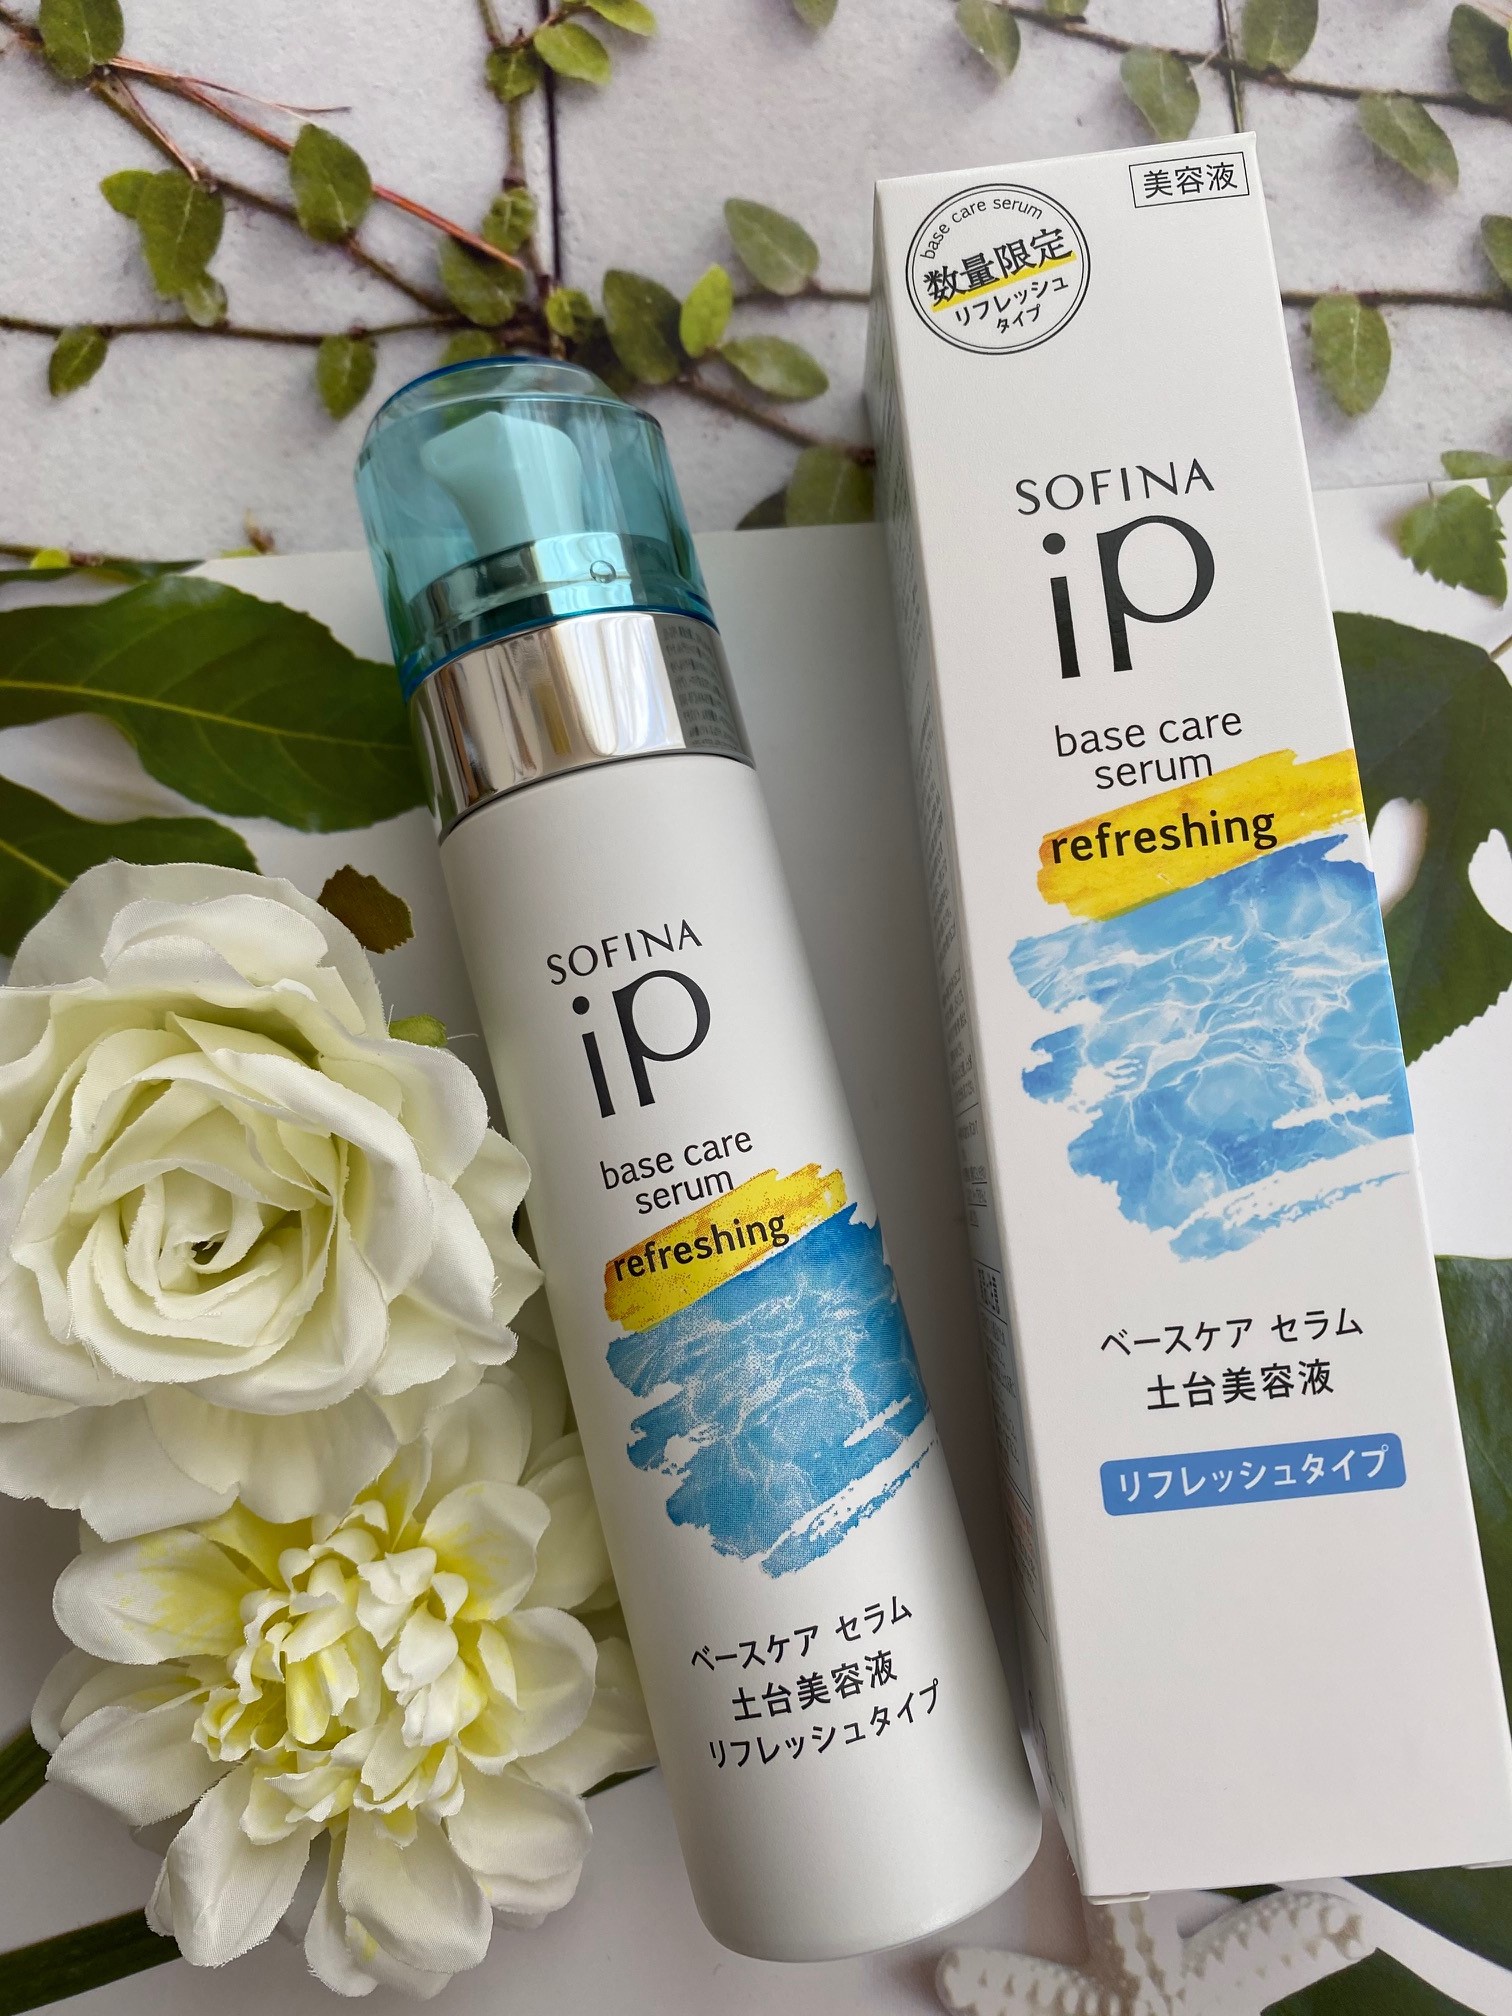 【2本】SOFINA iP ベースケア セラム 土台美容液 リフレッシュタイプ